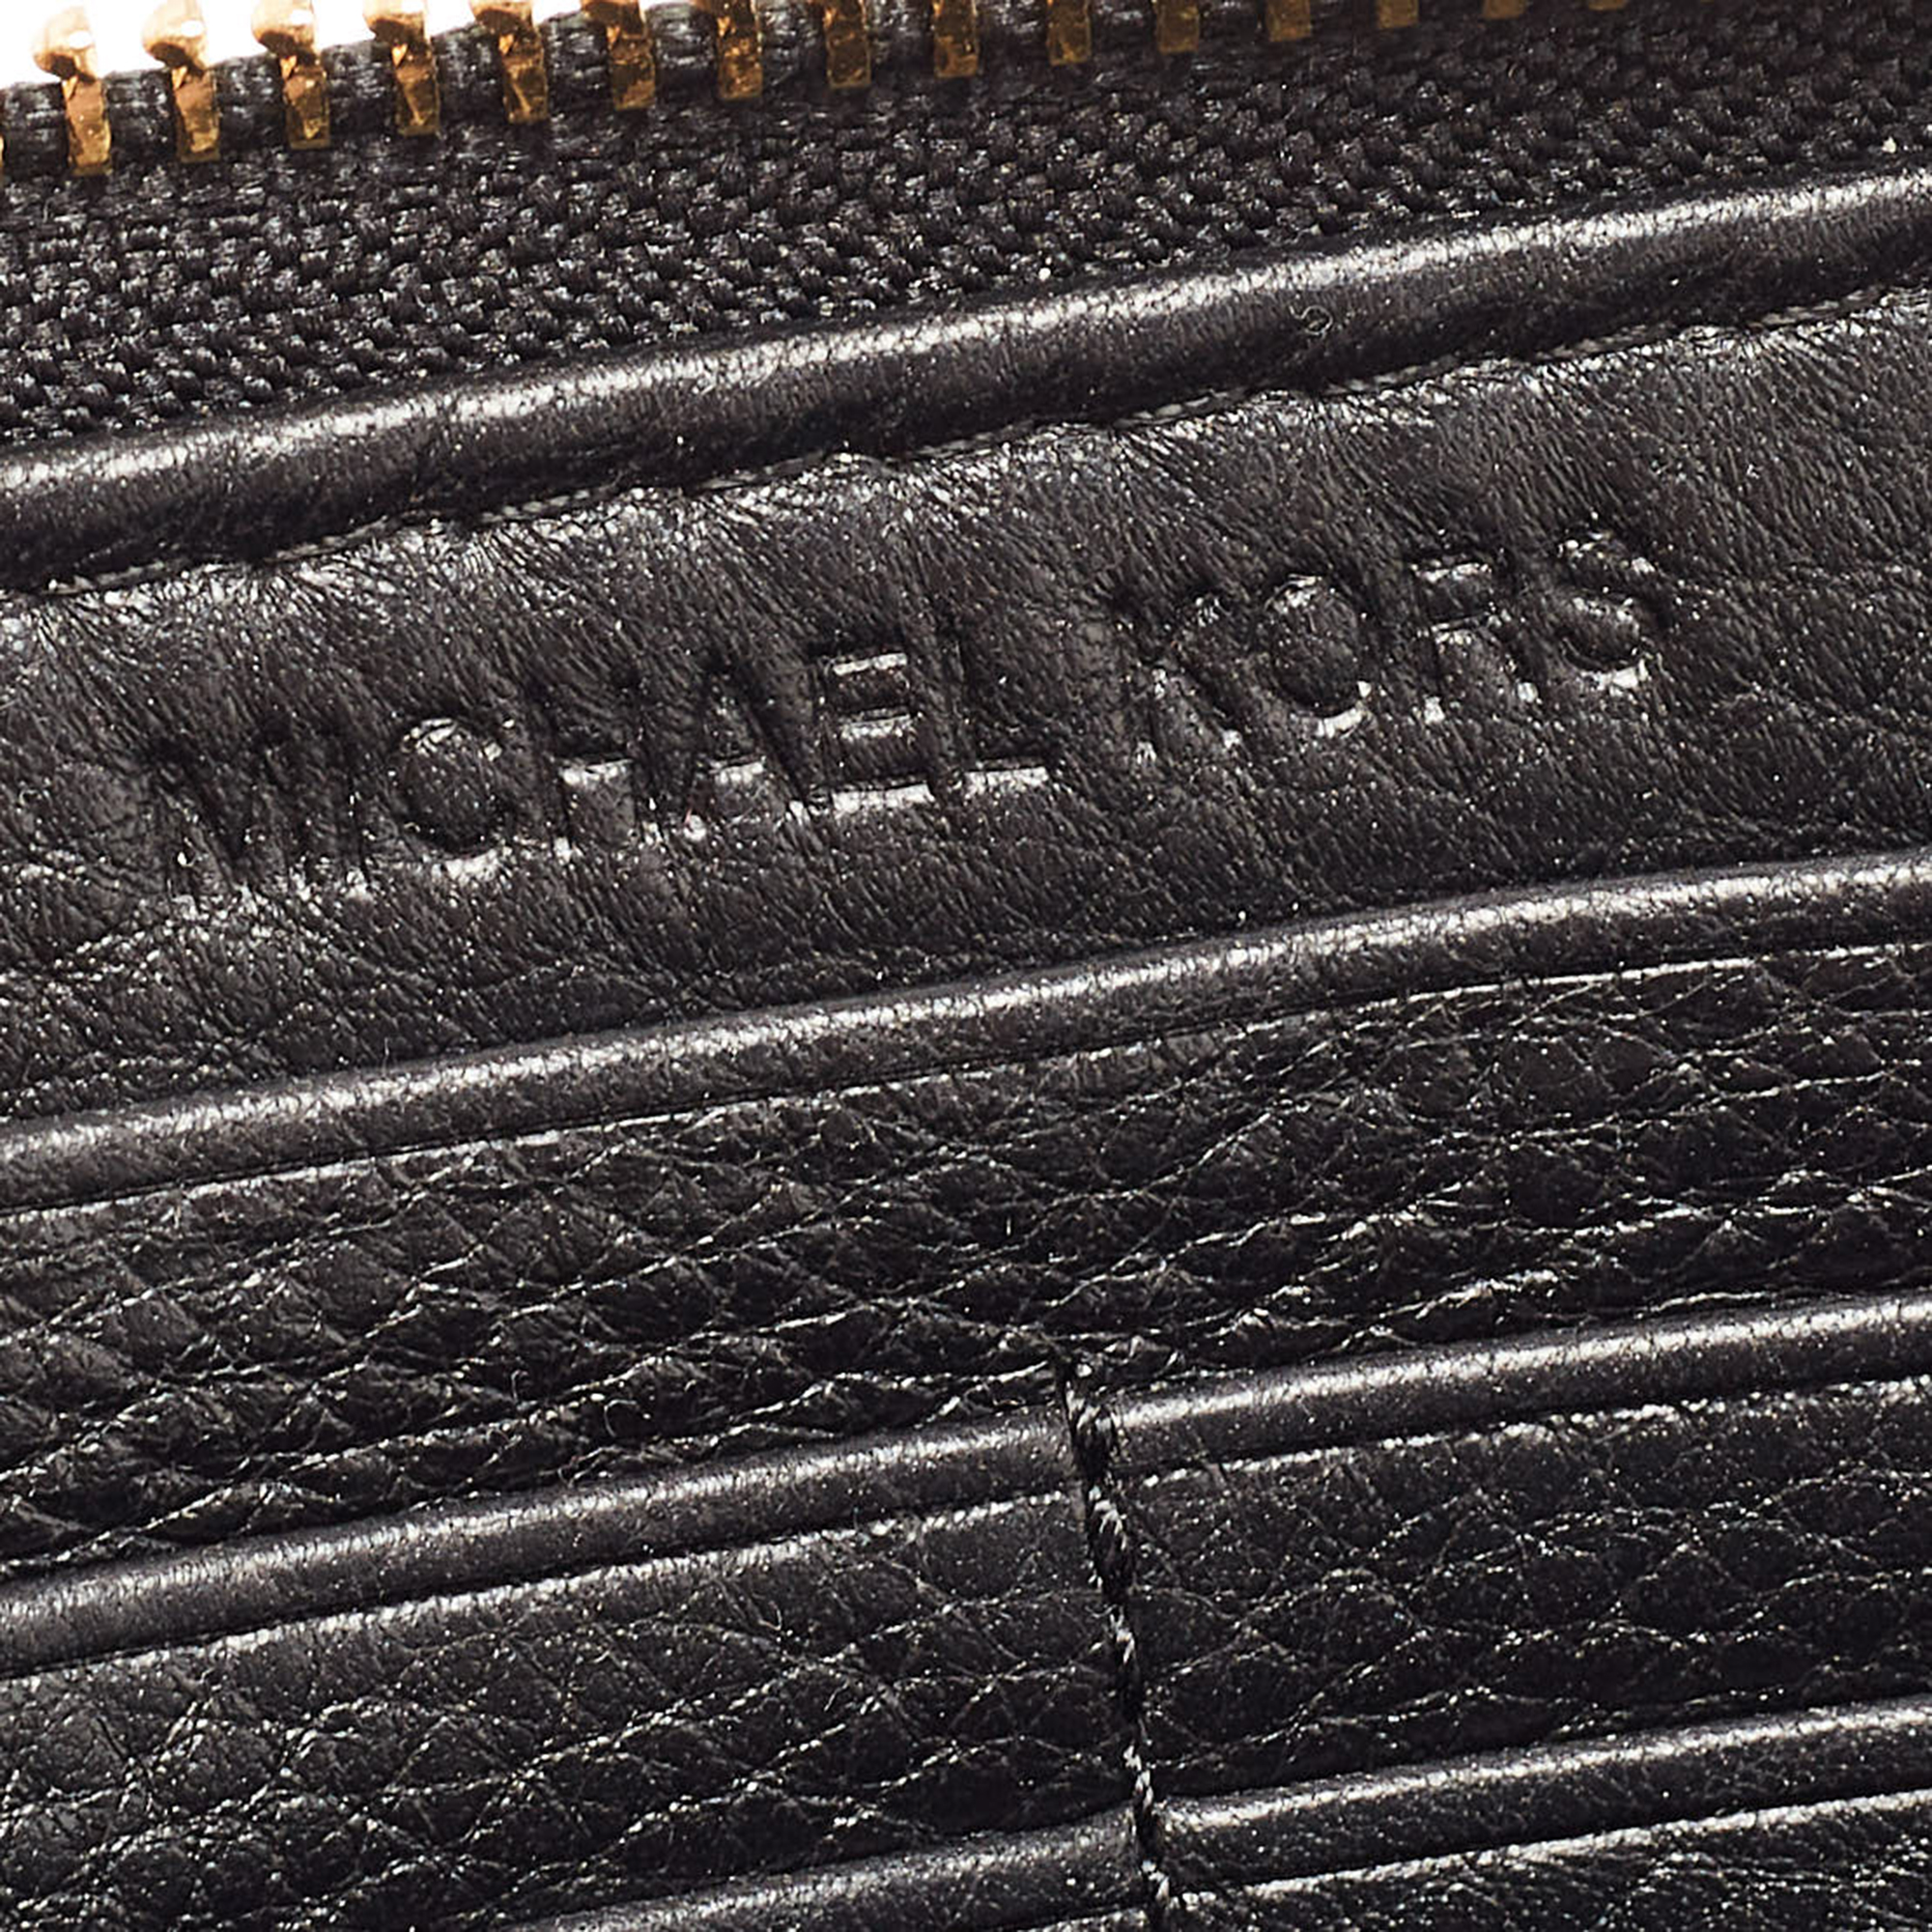 Michael Kors Black Leather Jet Set Zip Around Wallet